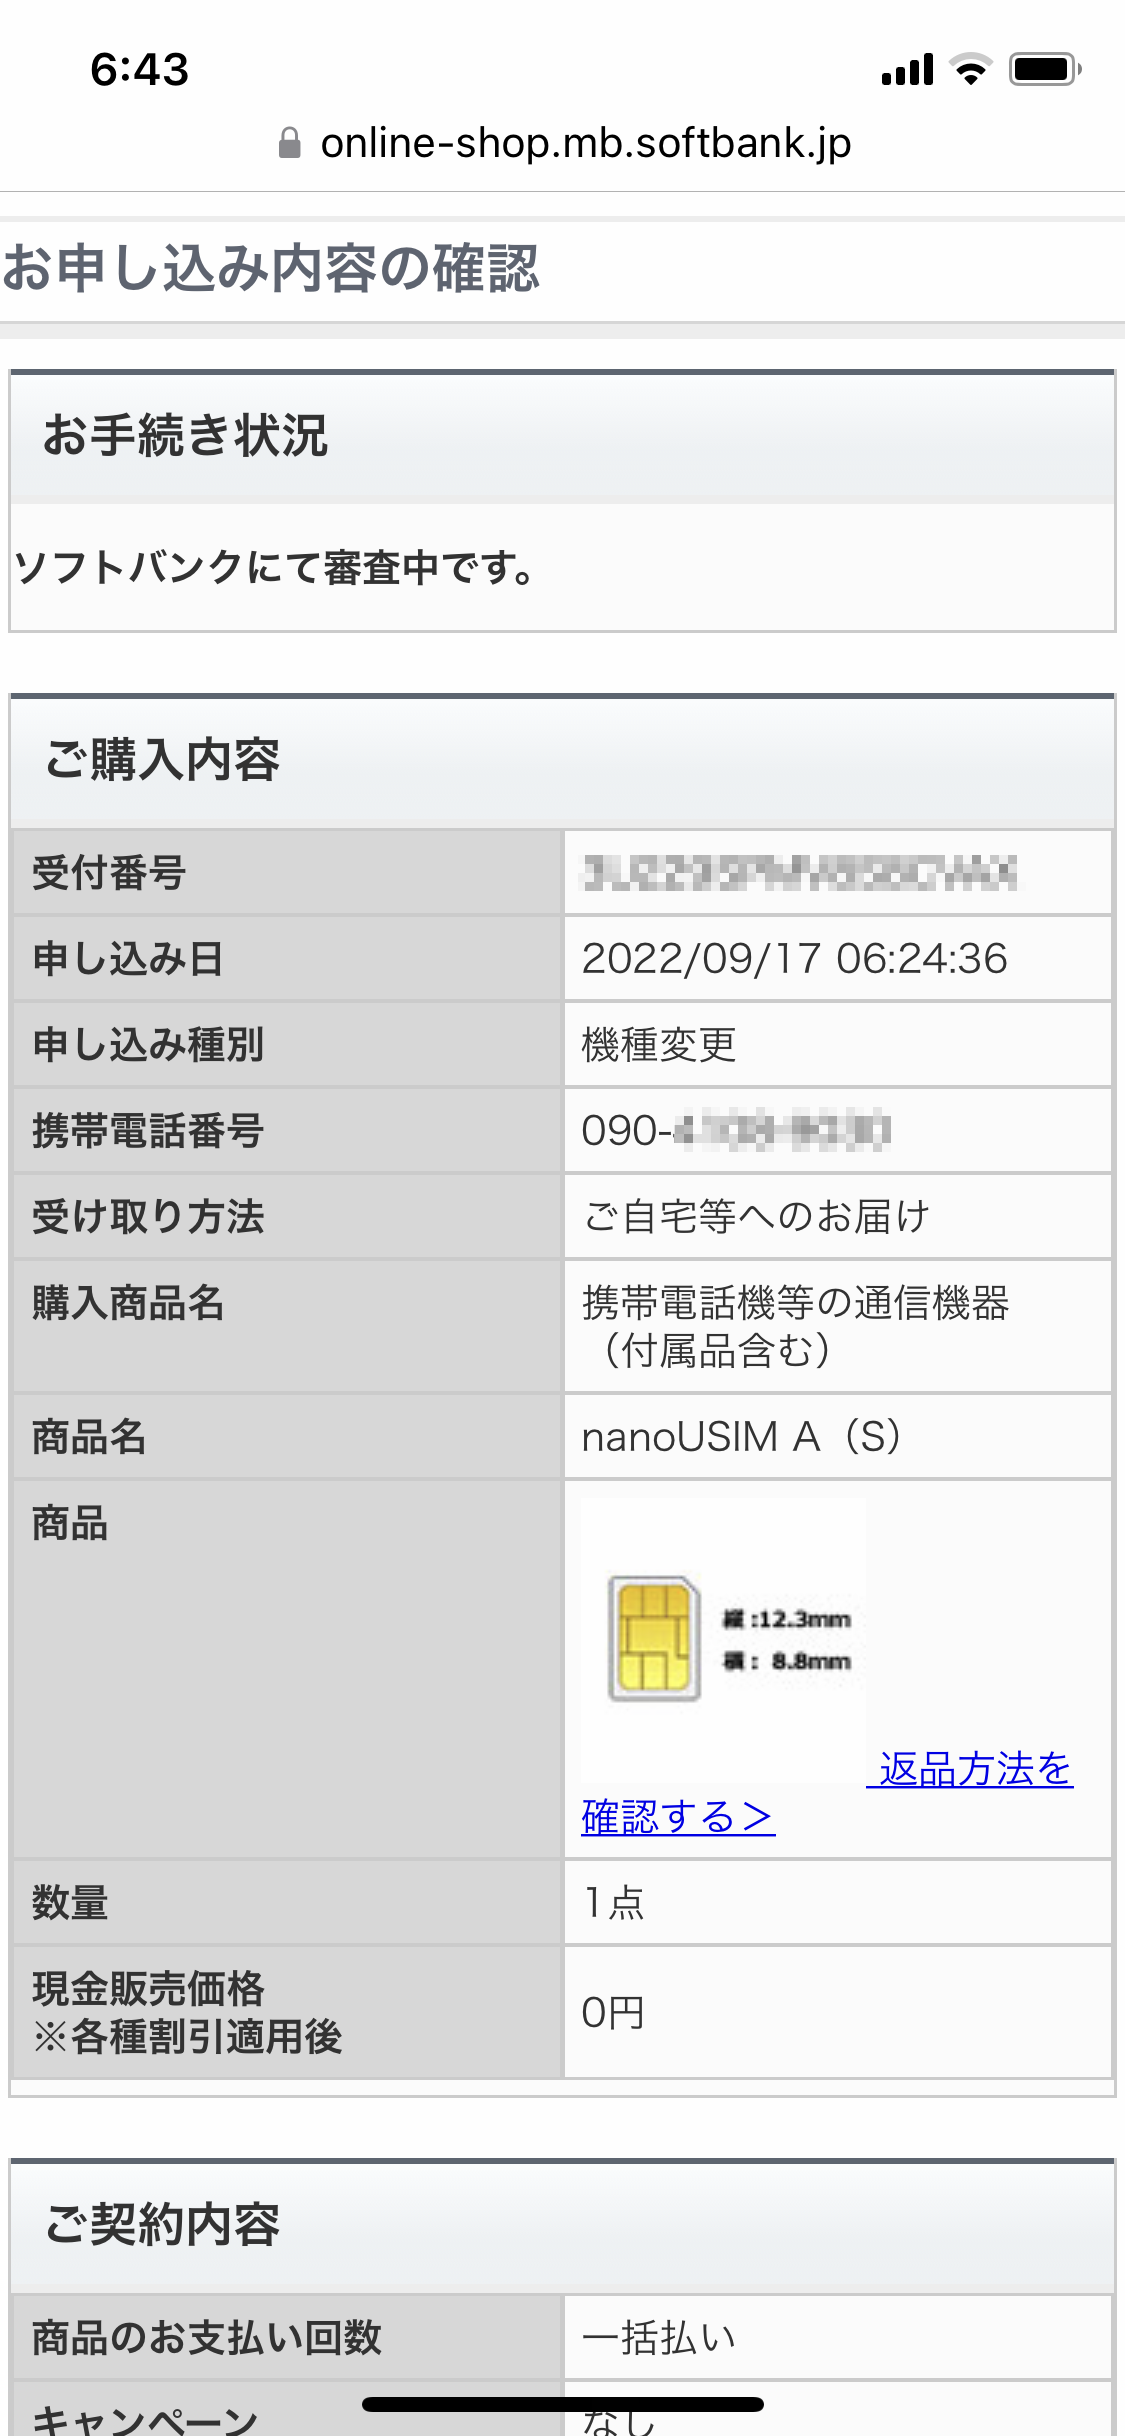 申込完了後に申込内容を表示した画面。nano USIMカードA（S）を申し込んだ旨や携帯電話番号、受取方法が表示されている。